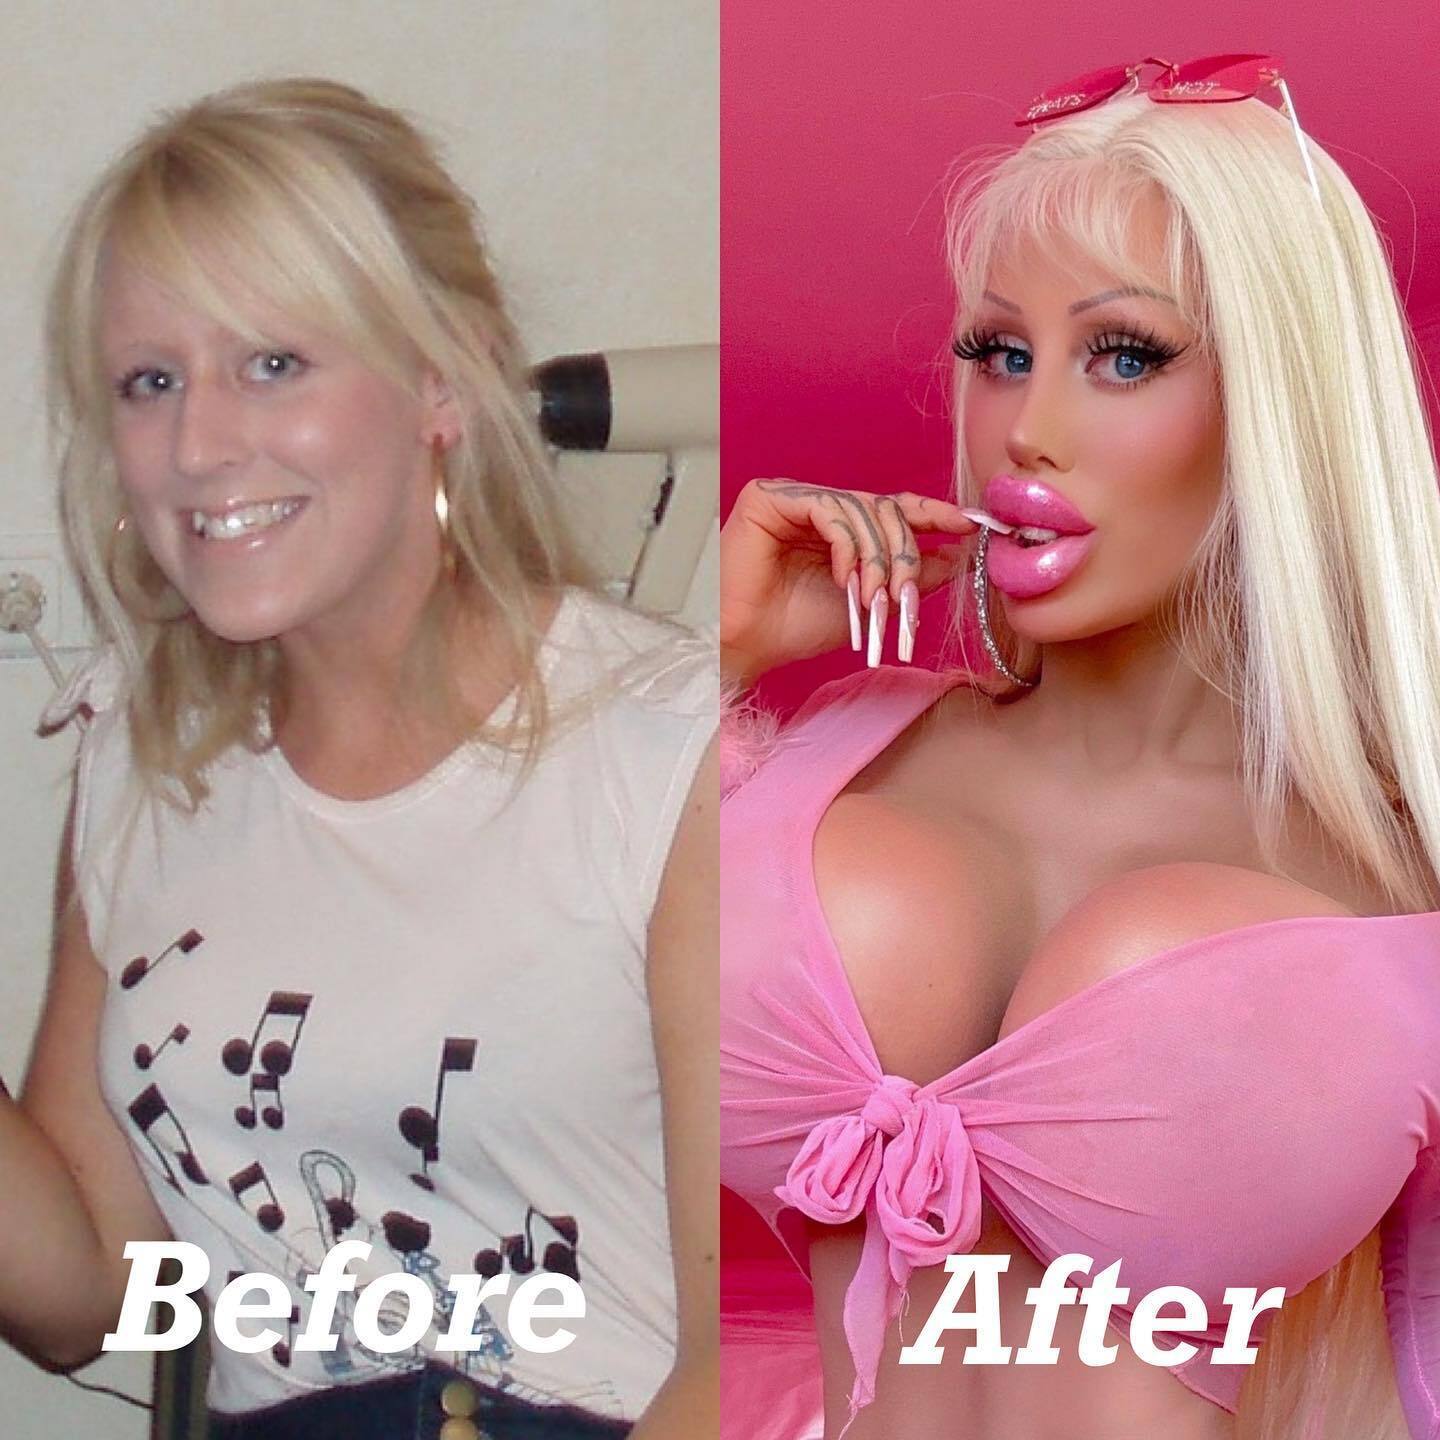 Модель OnlyFans, которая потратила 200 тысяч долларов, чтобы стать куклой "Барби", удалила все татуировки. Фото до и после